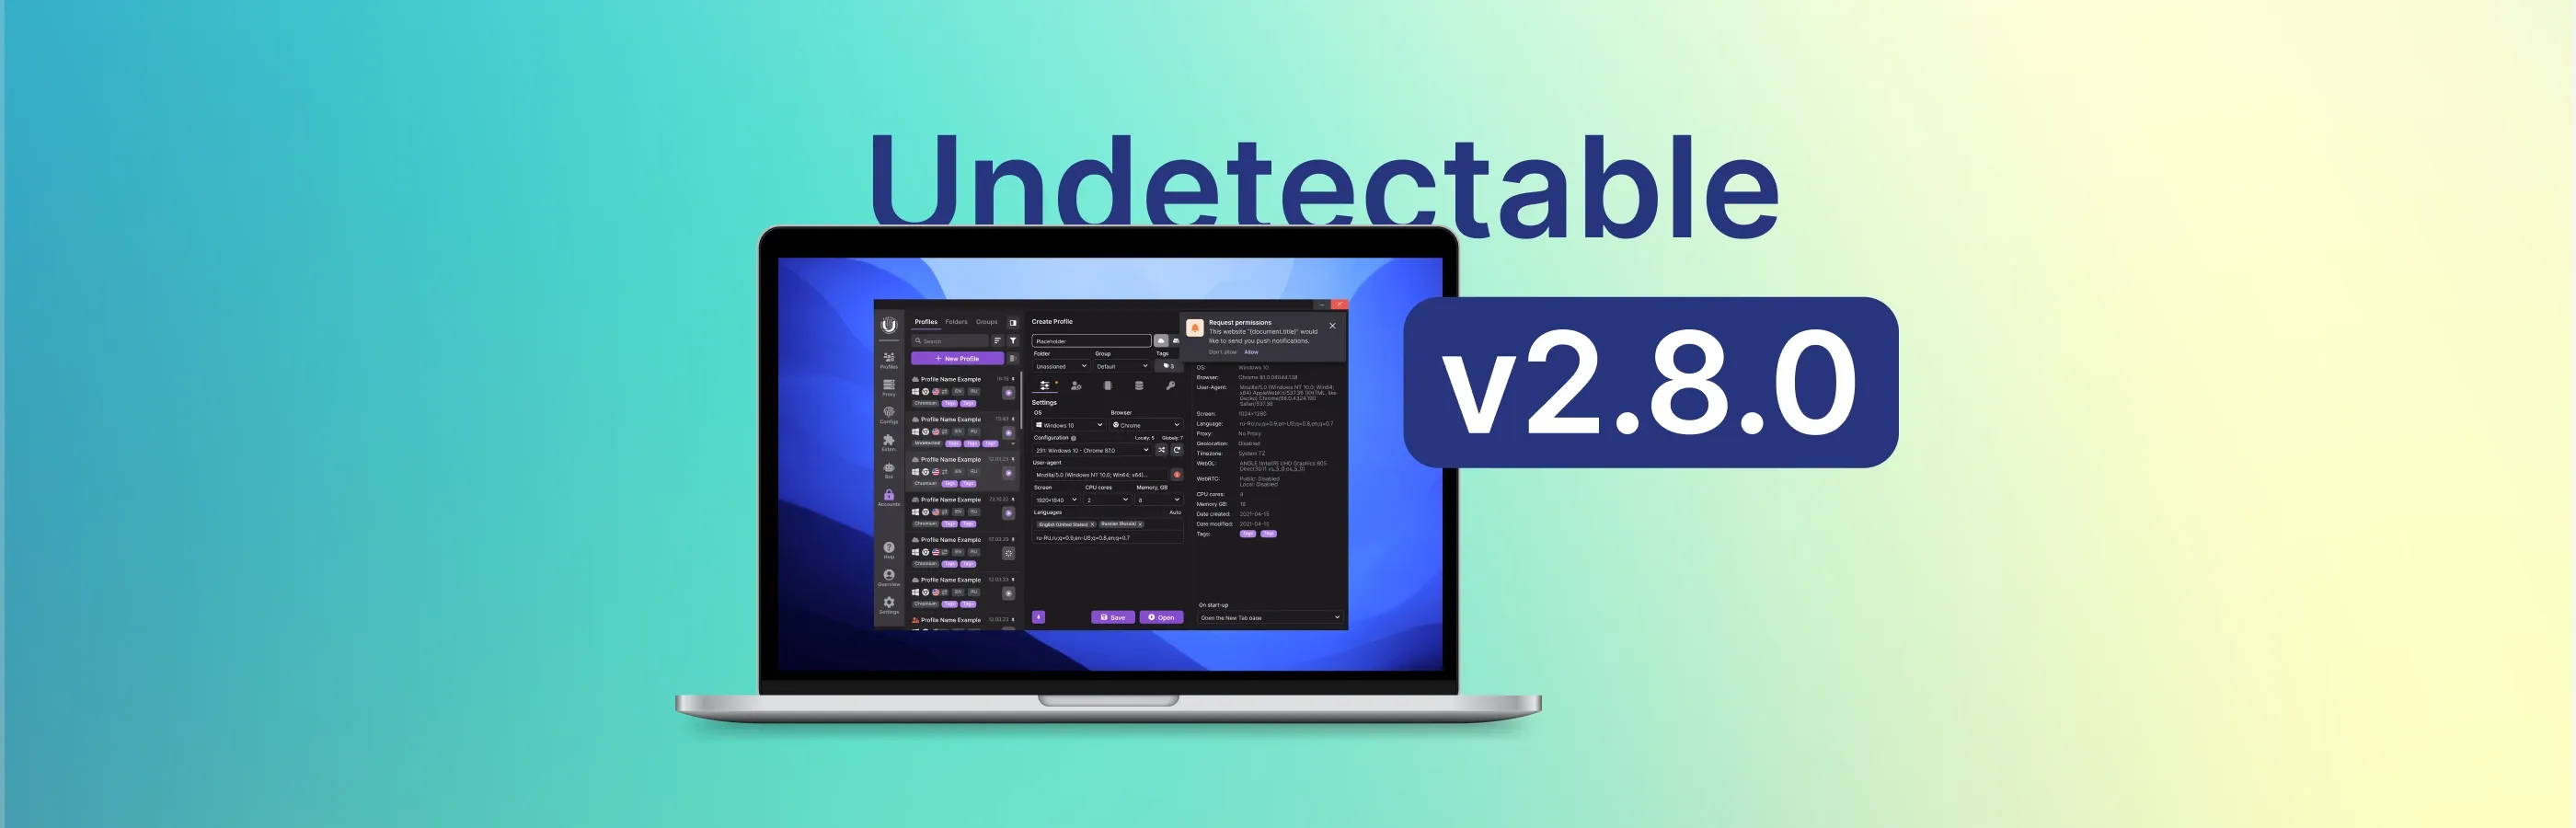 Atualização do navegador Undetectable 2.8.0: tema escuro e novos recursos